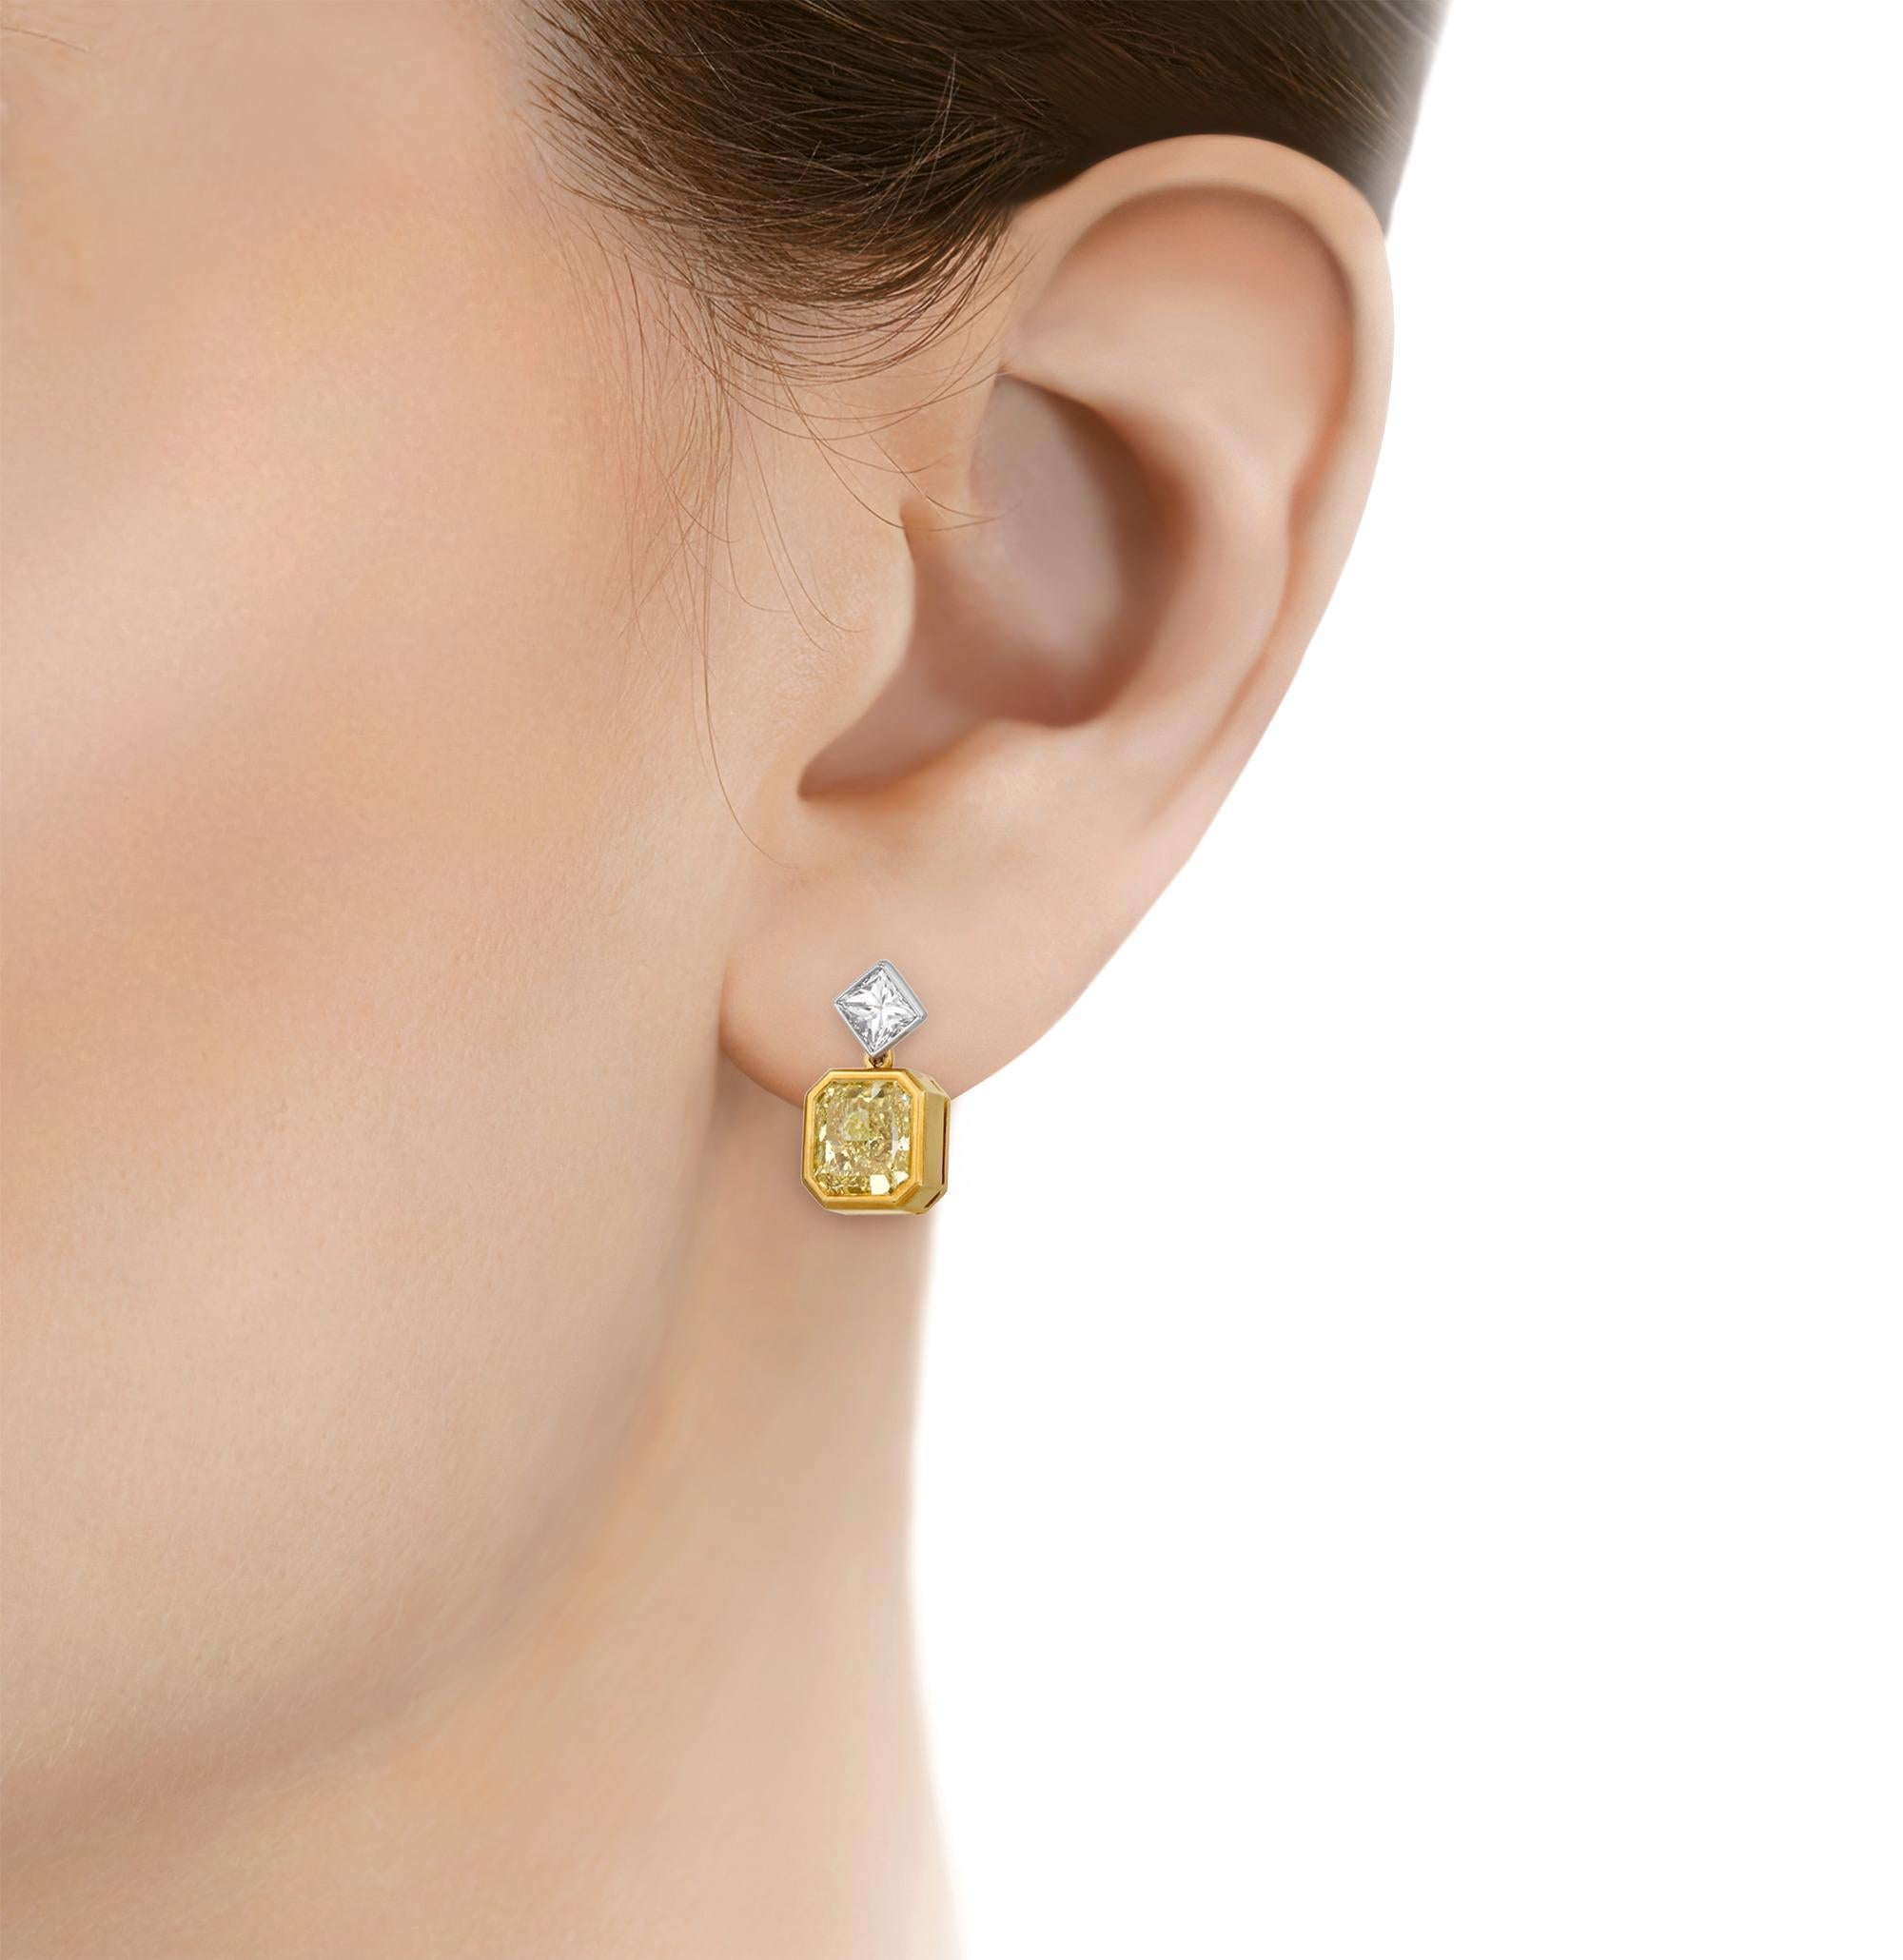 Dieses exquisite Paar Ohrhänger besteht aus zwei gelben Diamanten mit der Reinheit VVS1-VVS2 von insgesamt 4,47 Karat. Ihr strahlender Schliff glänzt in einer raffinierten Lünettenfassung aus 18 Karat Gelbgold. Der sonnenglänzende Farbton der gelben